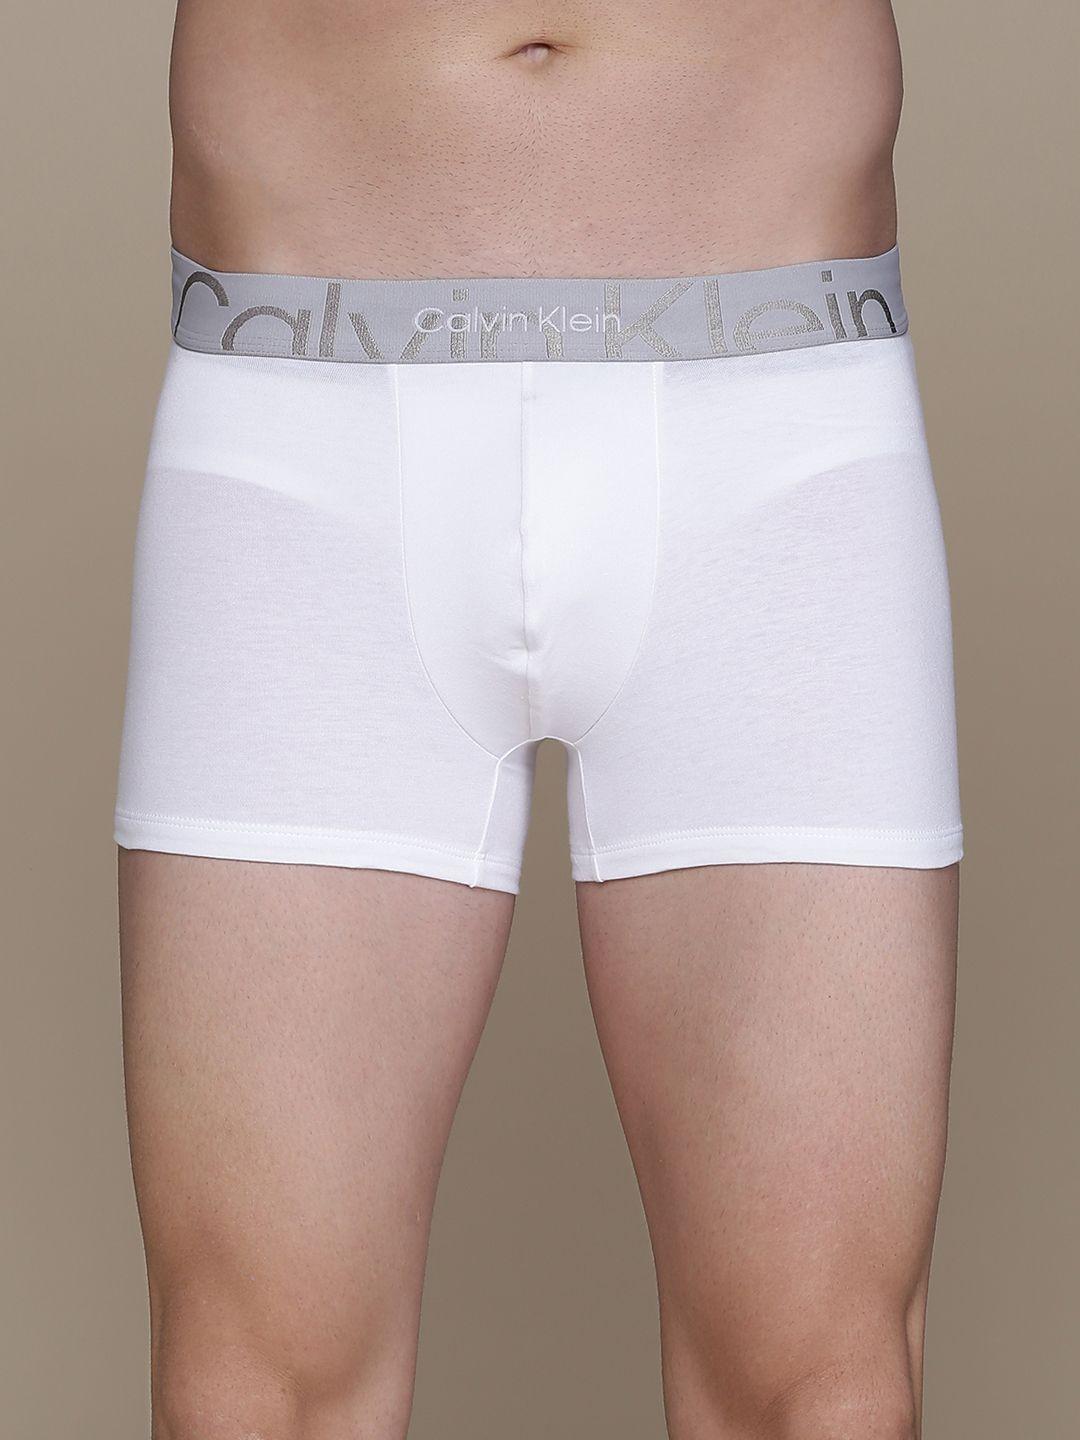 Calvin Klein Underwear Men White Solid Trunk-NB3299100